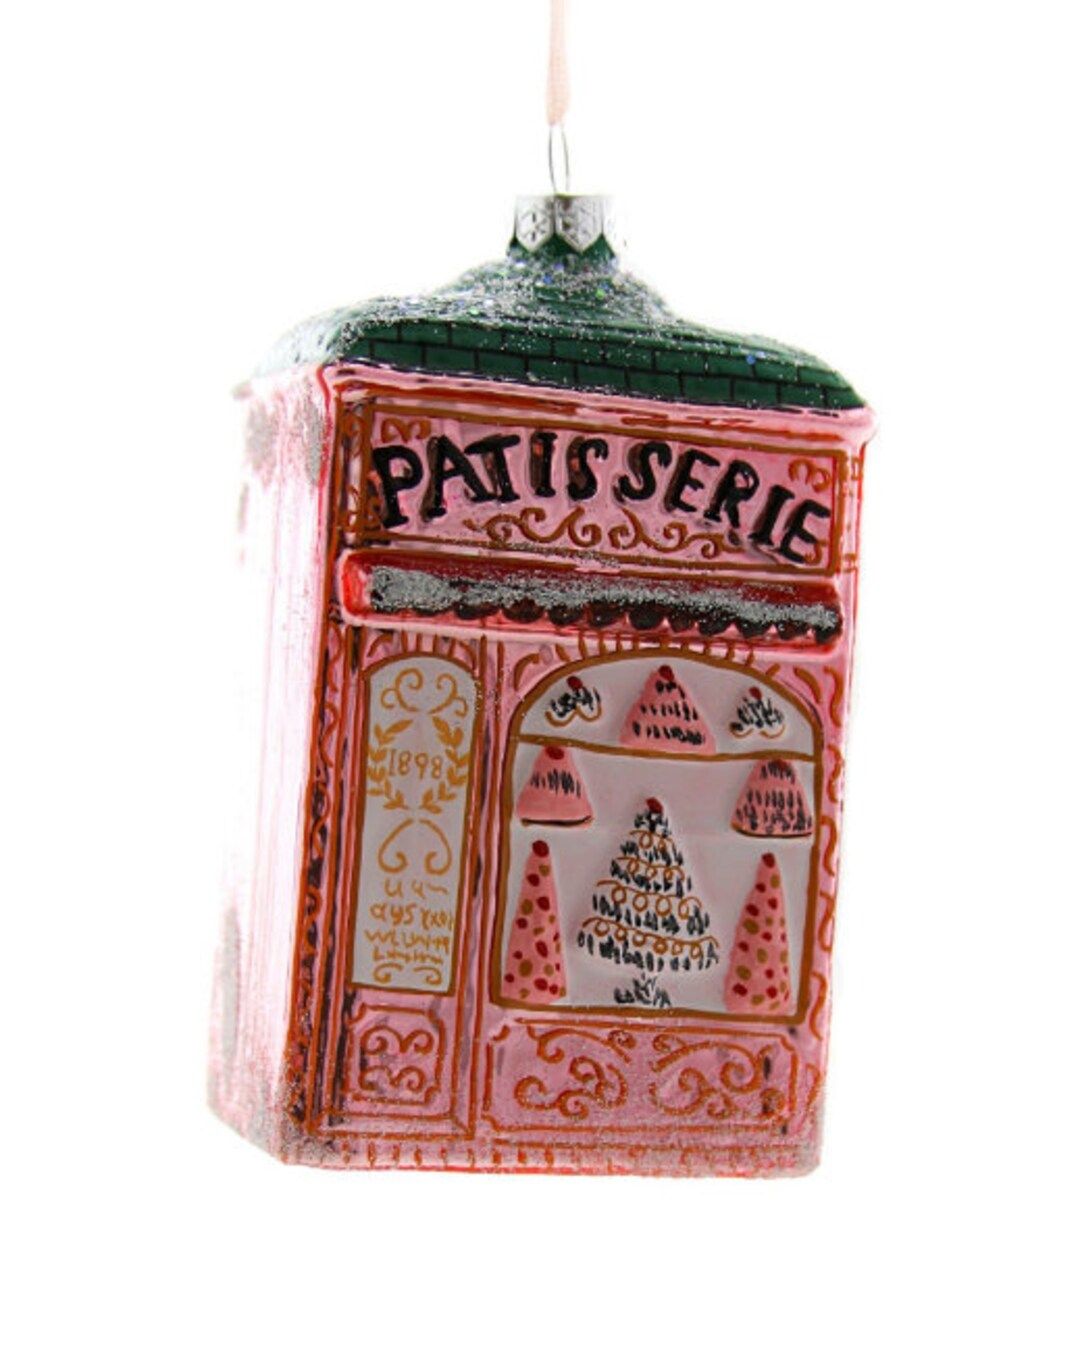 Patisserie bakery ornament embellishment | Etsy (US)